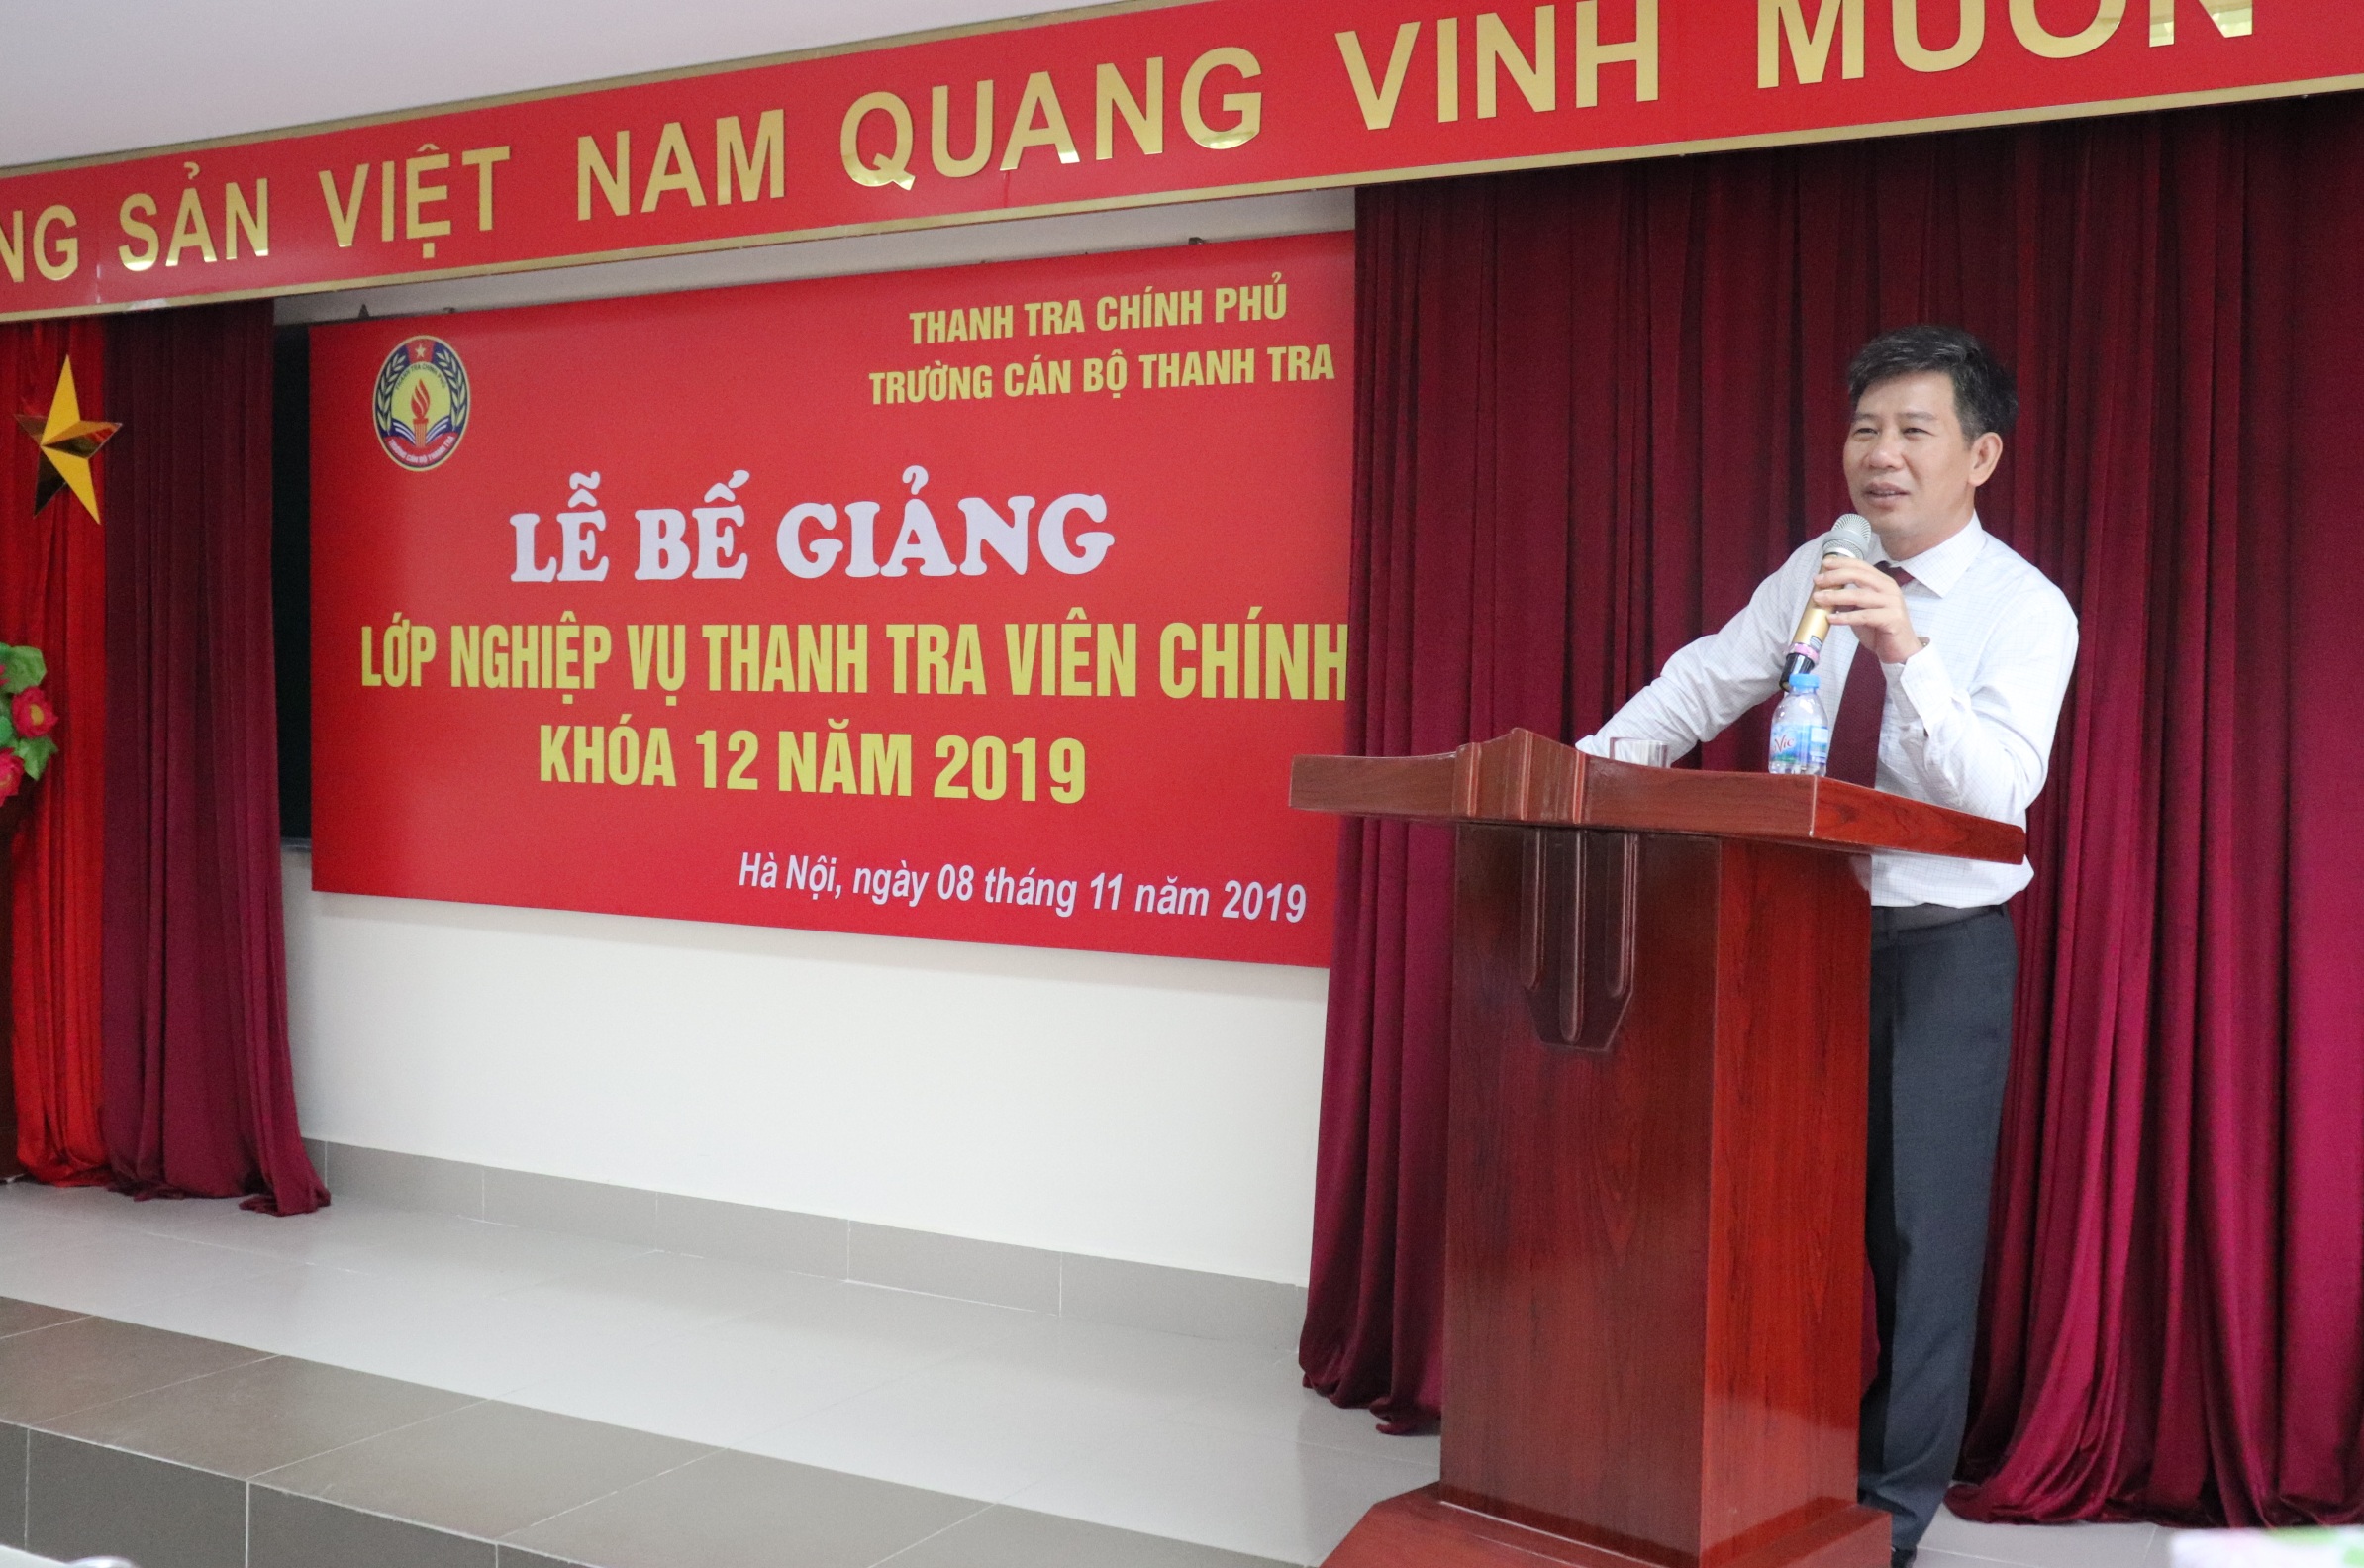 Ông Nguyễn Viết Thạch Phó Hiệu trưởng nhà trường phát biểu bế giảng khóa học